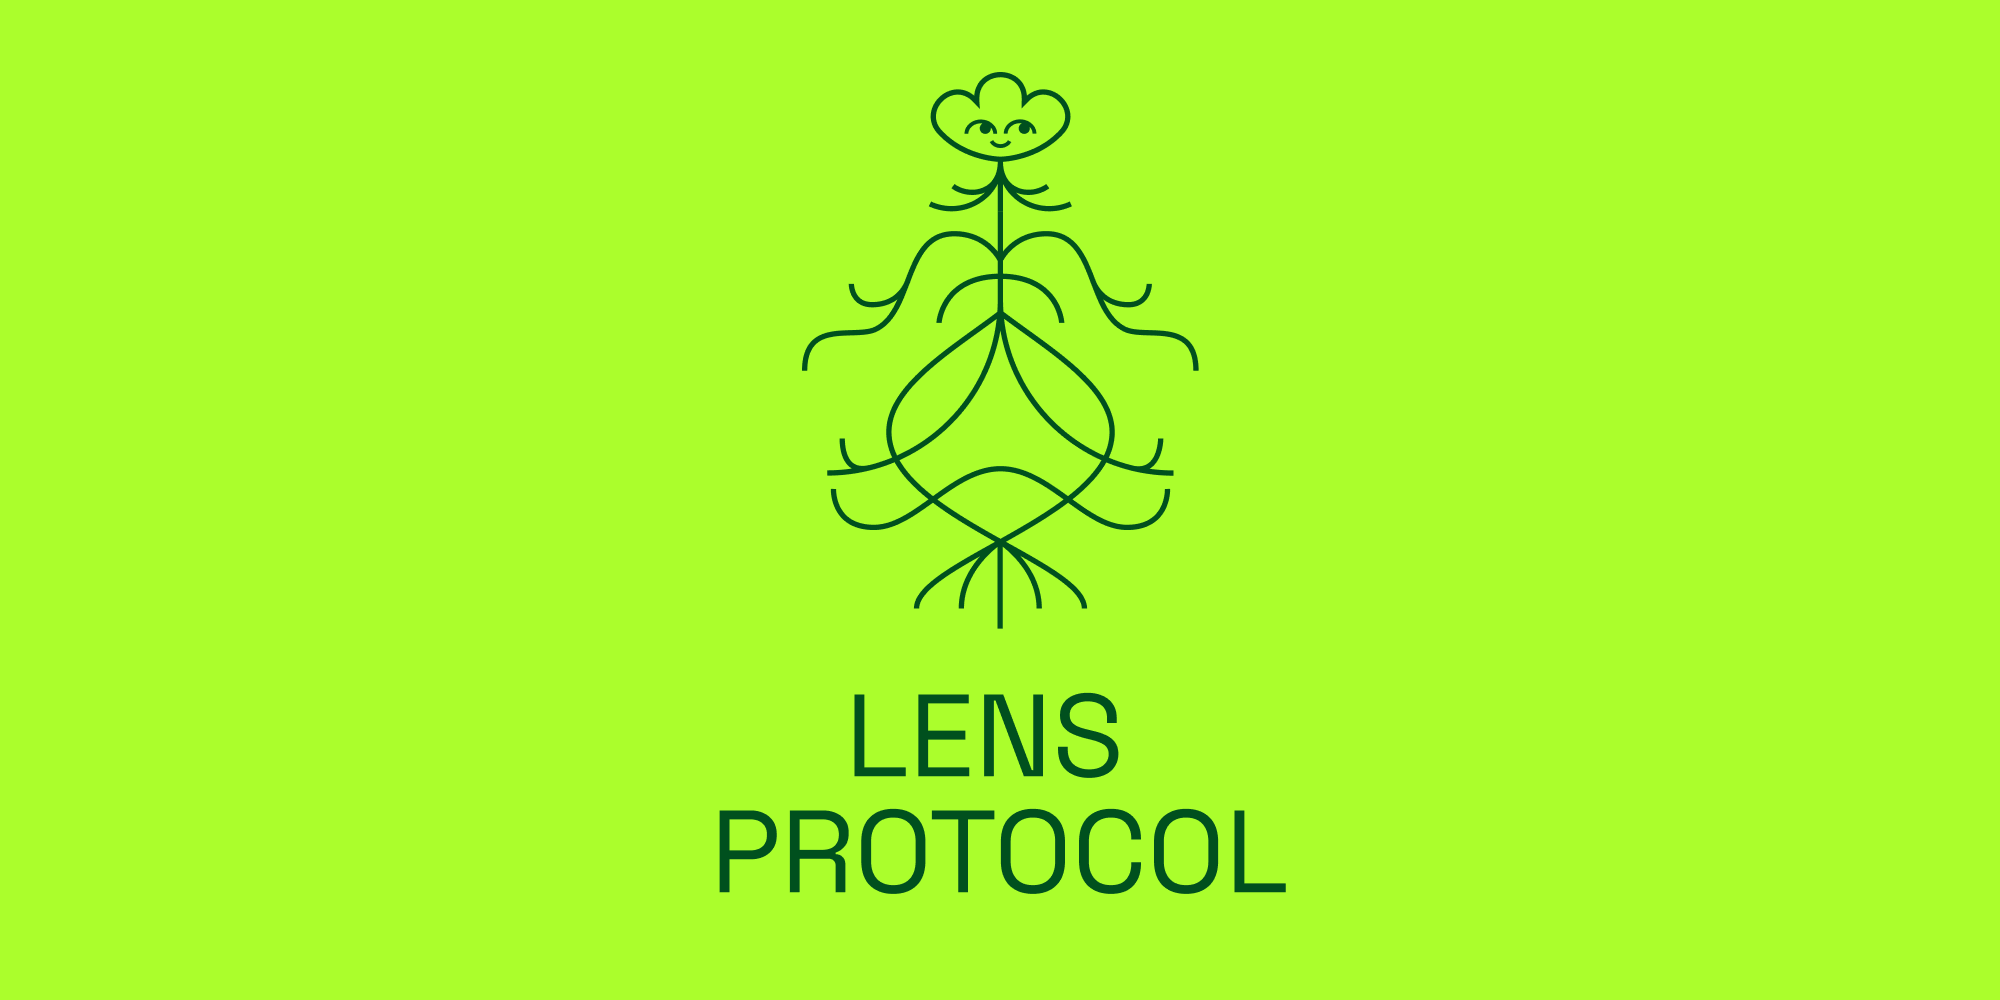 ماژول های پروتکل لنز